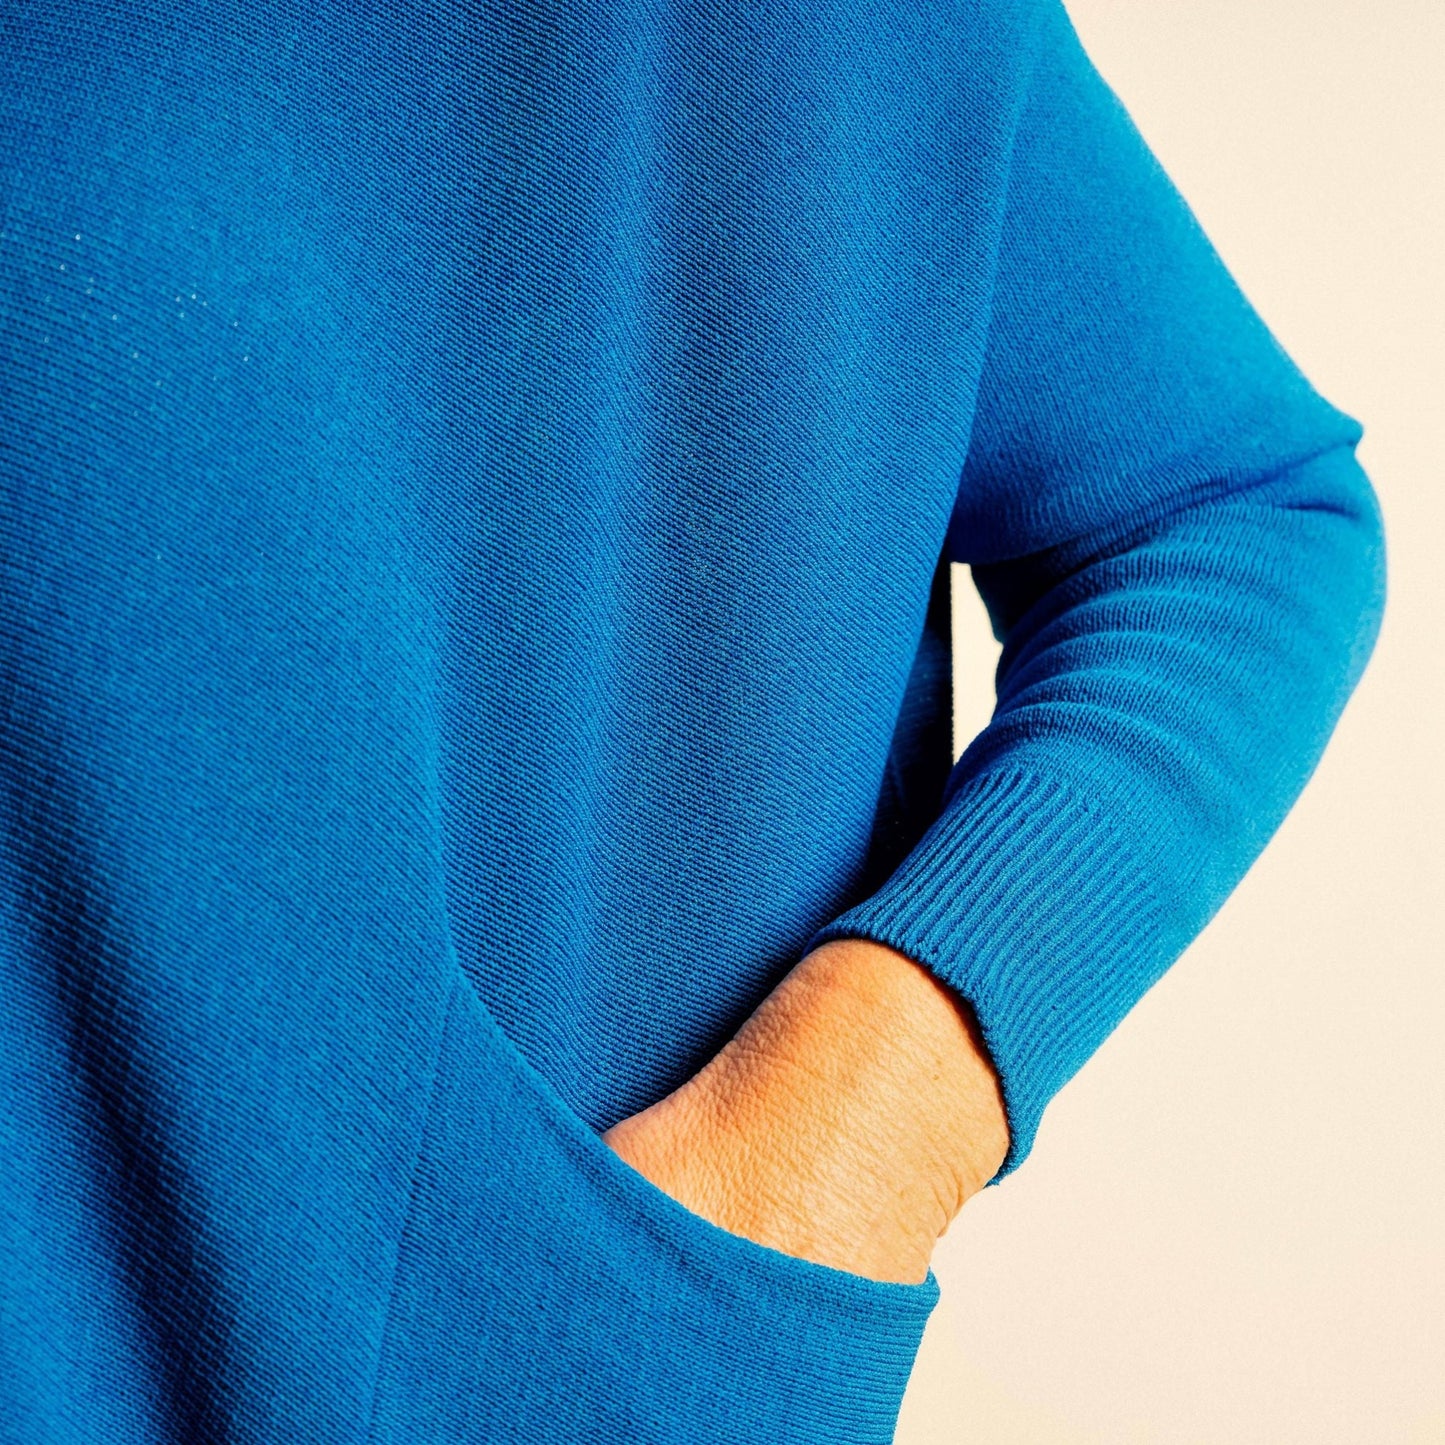 Cobalt Blue Structured Knit Double Pocket V Neck Easy Wear Top - Amilu